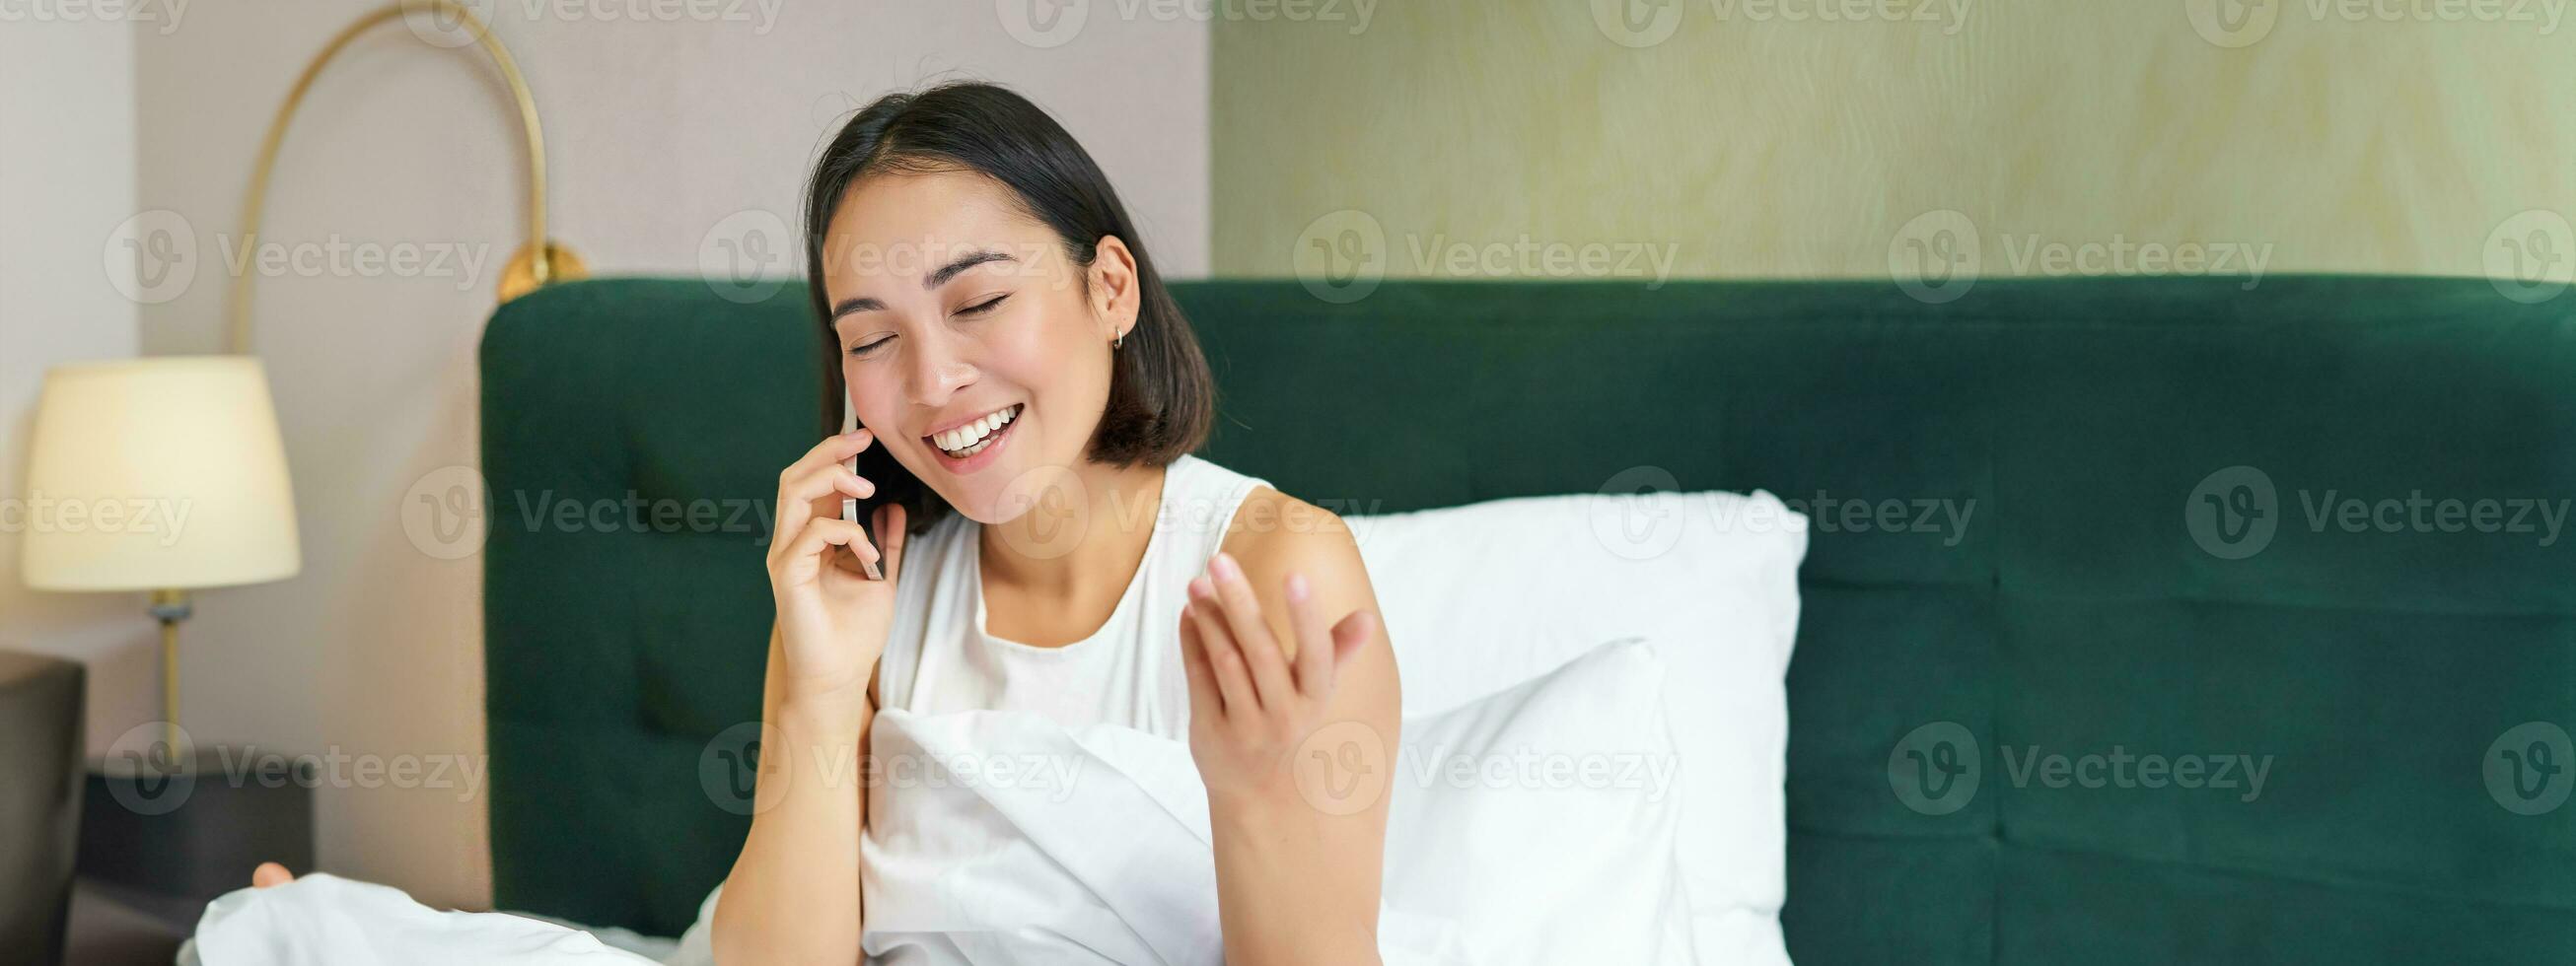 cerca arriba retrato de linda asiático niña en cama, hablando en móvil teléfono con contento sonriente rostro. mujer despertar arriba y haciendo un teléfono llamada foto